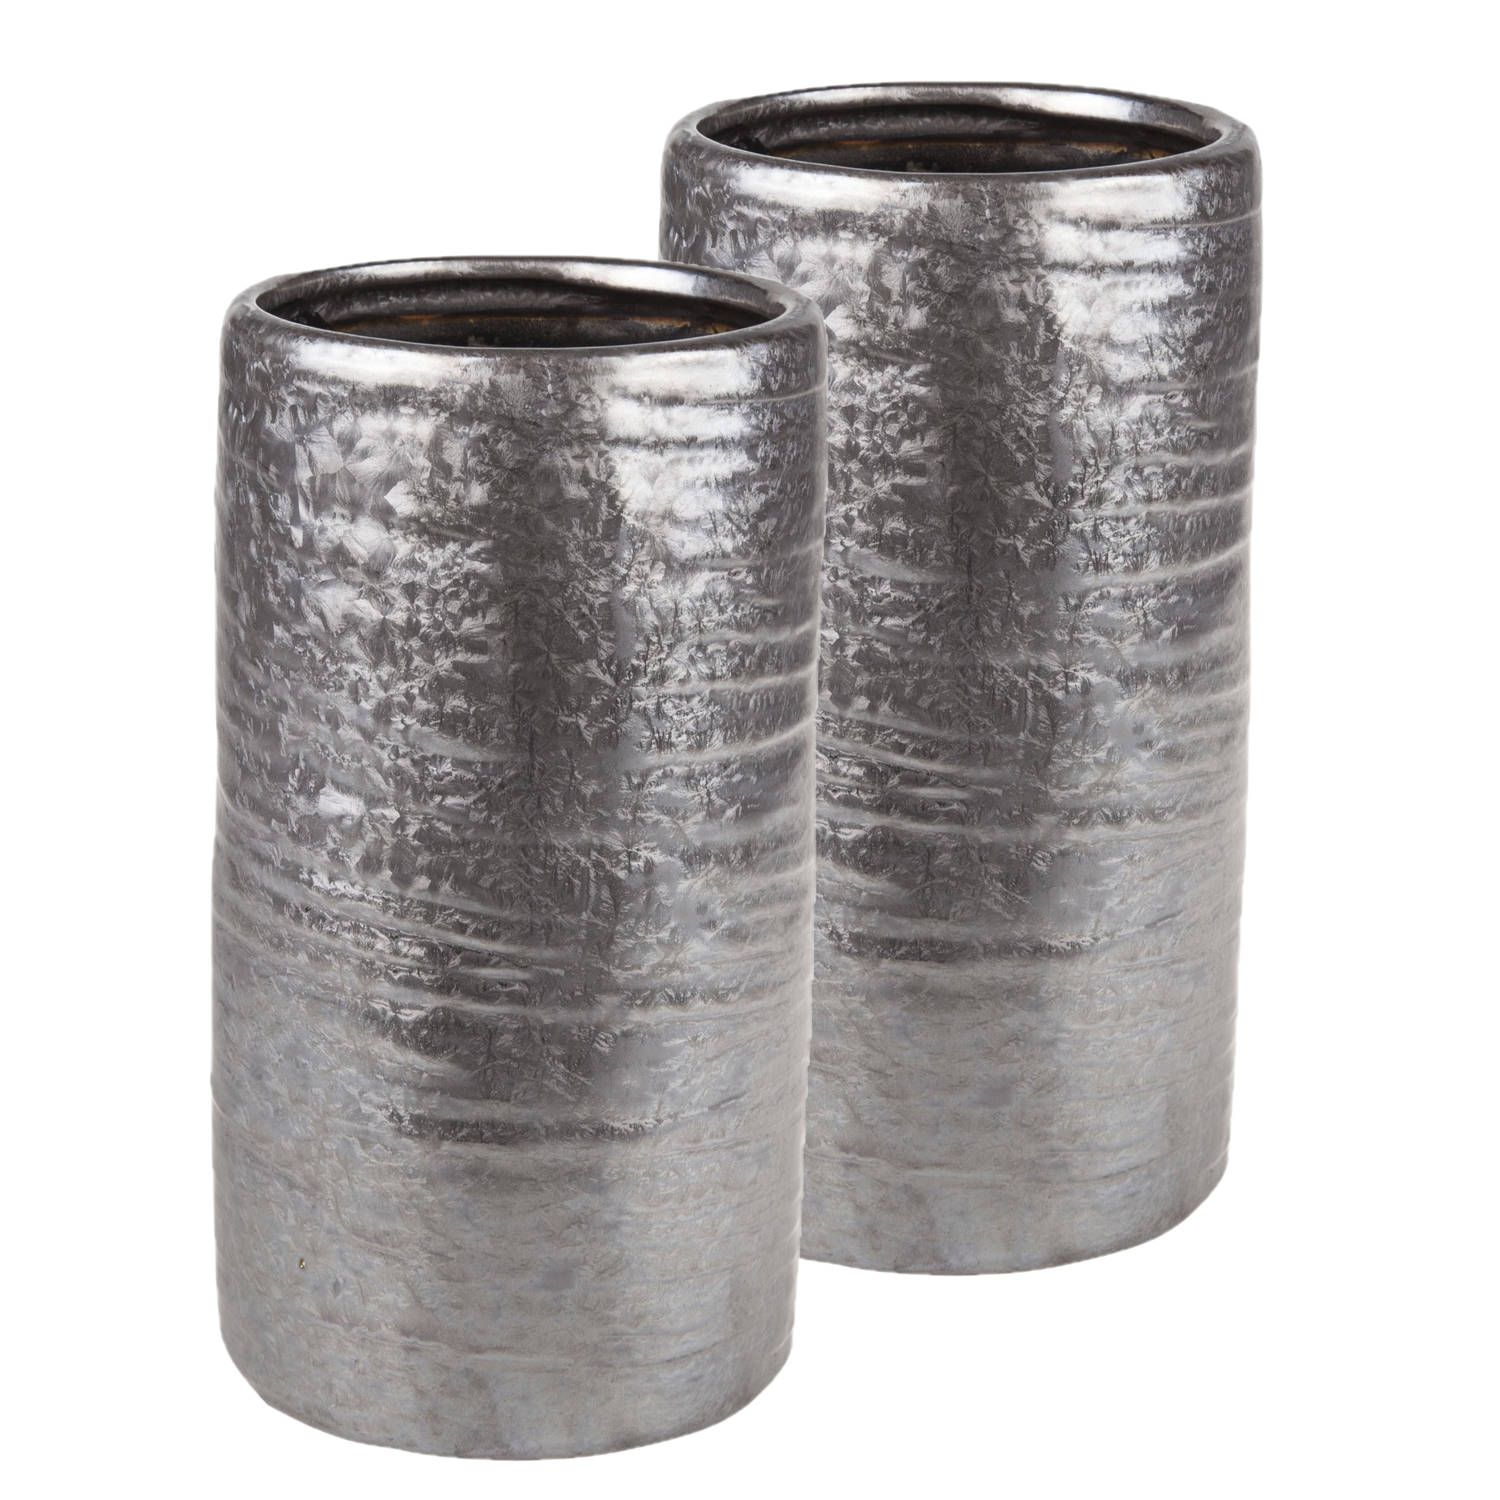 2x Stuks Cilinder Vazen Keramiek Zilver-grijs 12 X 22 Cm Keramieken Vazen